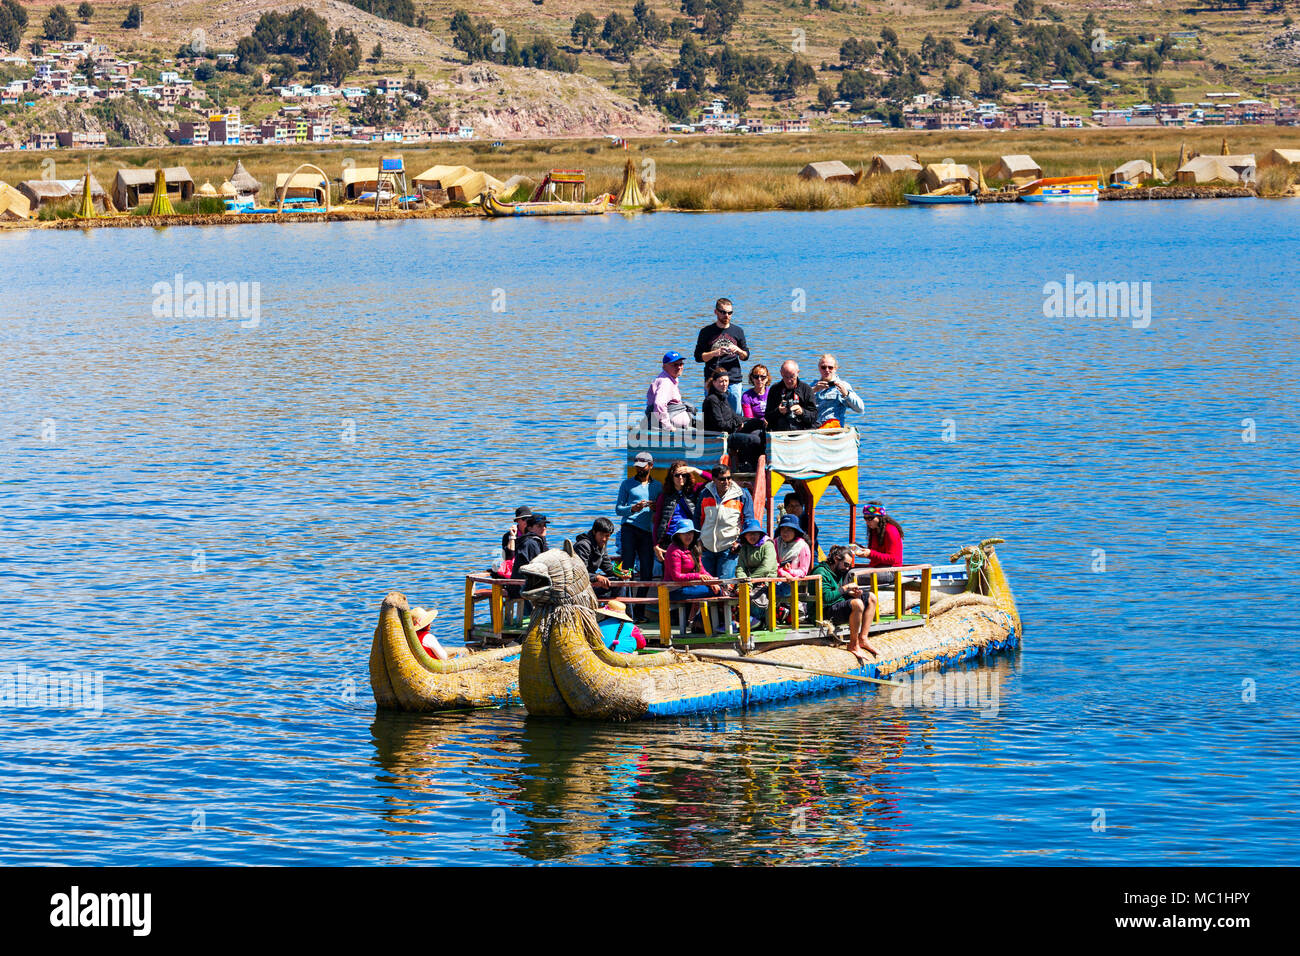 PUNO, PERU - MAY 14, 2015: Unidentified tourists in Totora boat, Titicaca lake near Puno, Peru Stock Photo